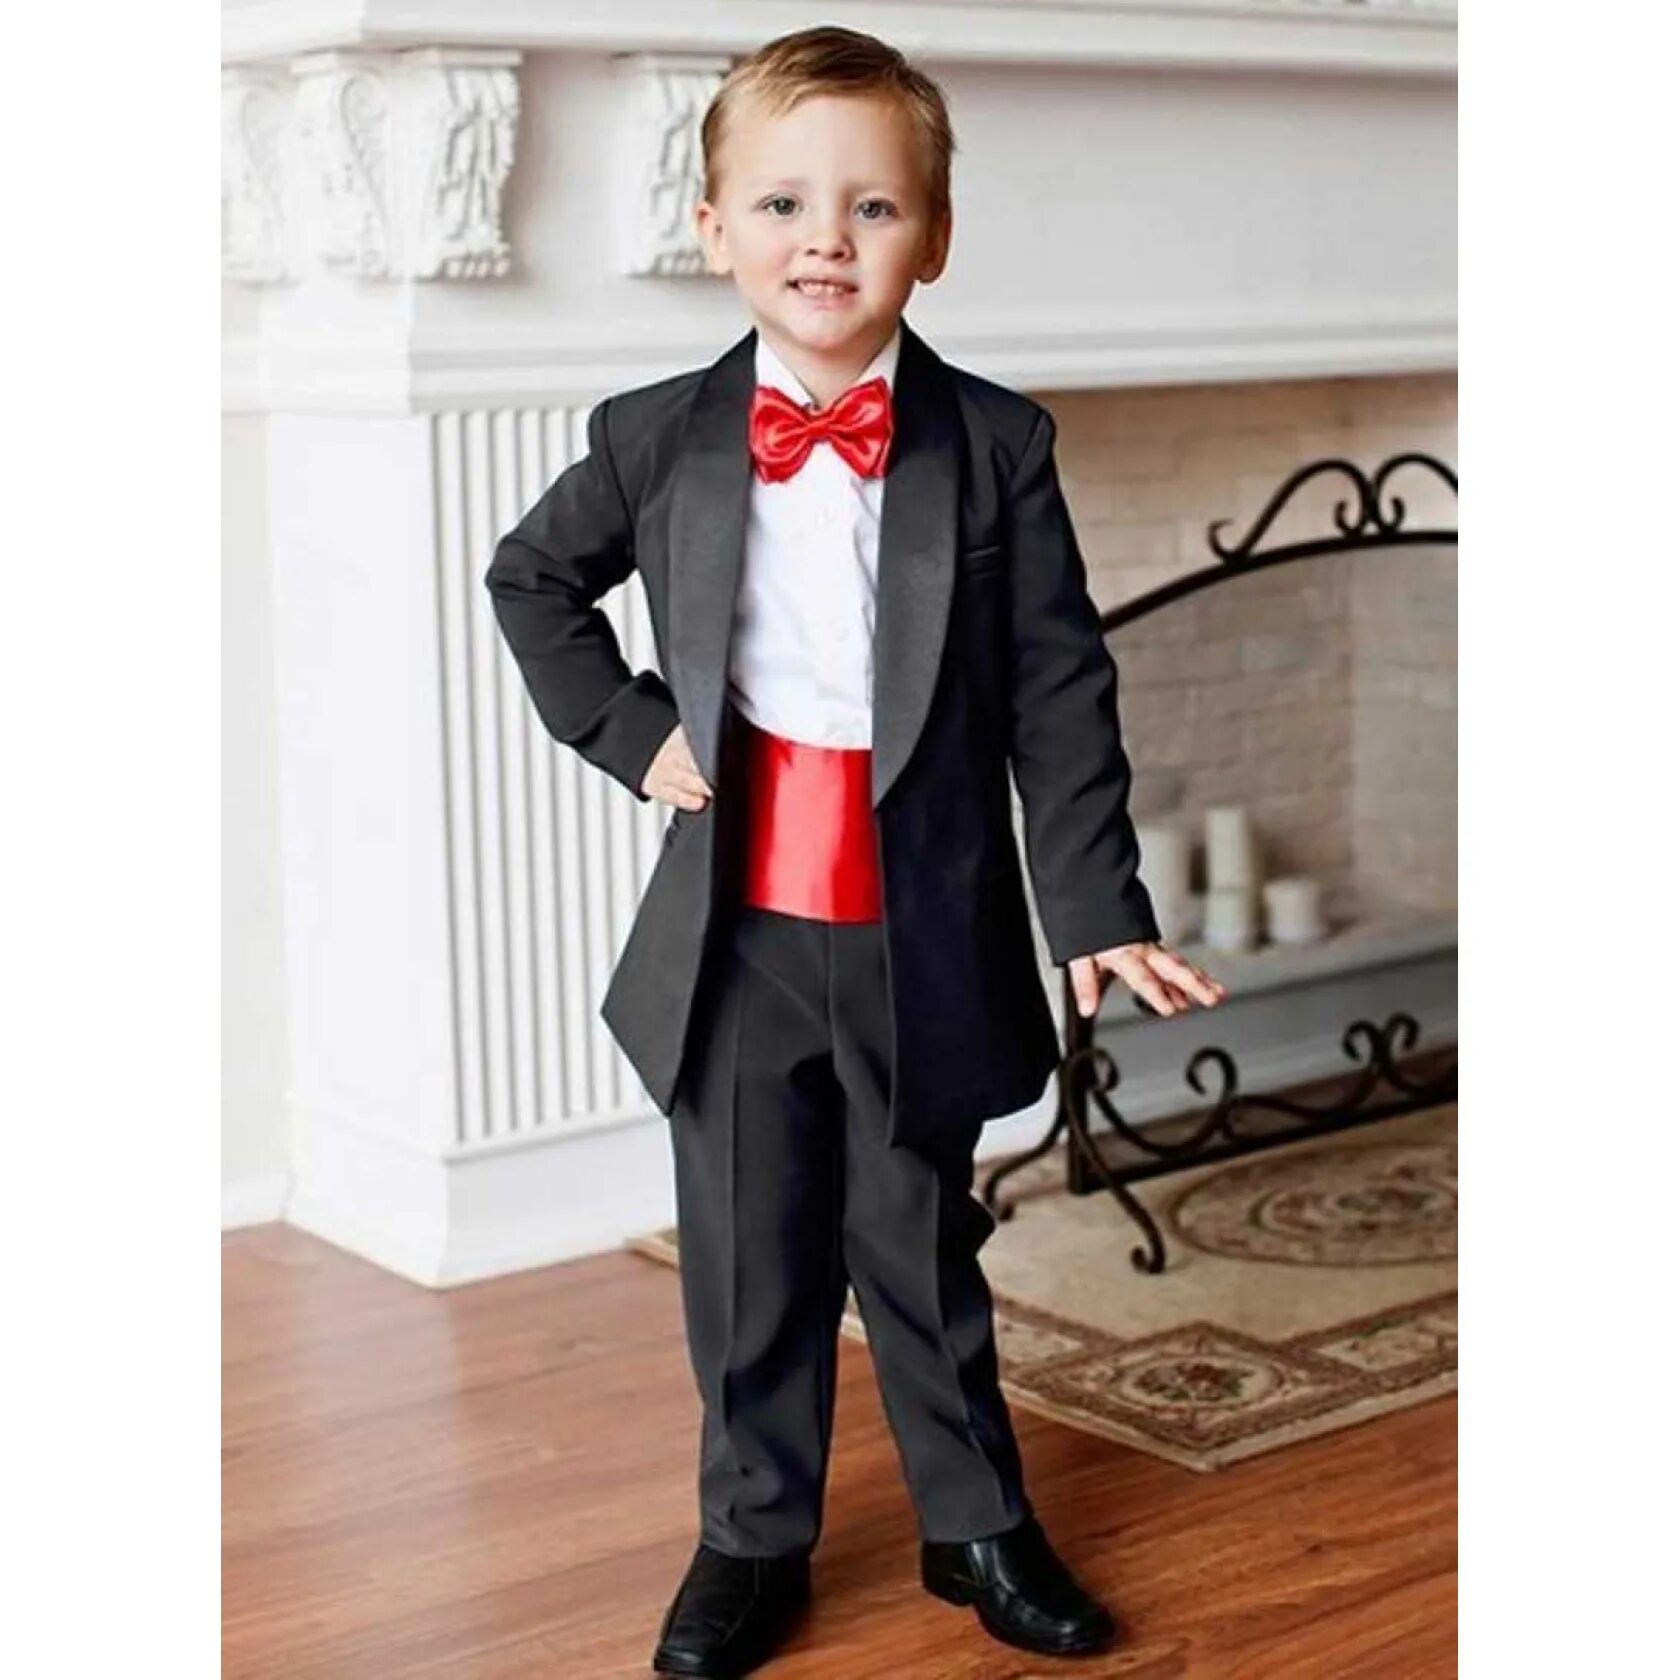 Праздничный костюм для мальчика. Детский классический костюм. Мальчик в смокинге. Детские классические костюмы. Фото мальчика в костюме